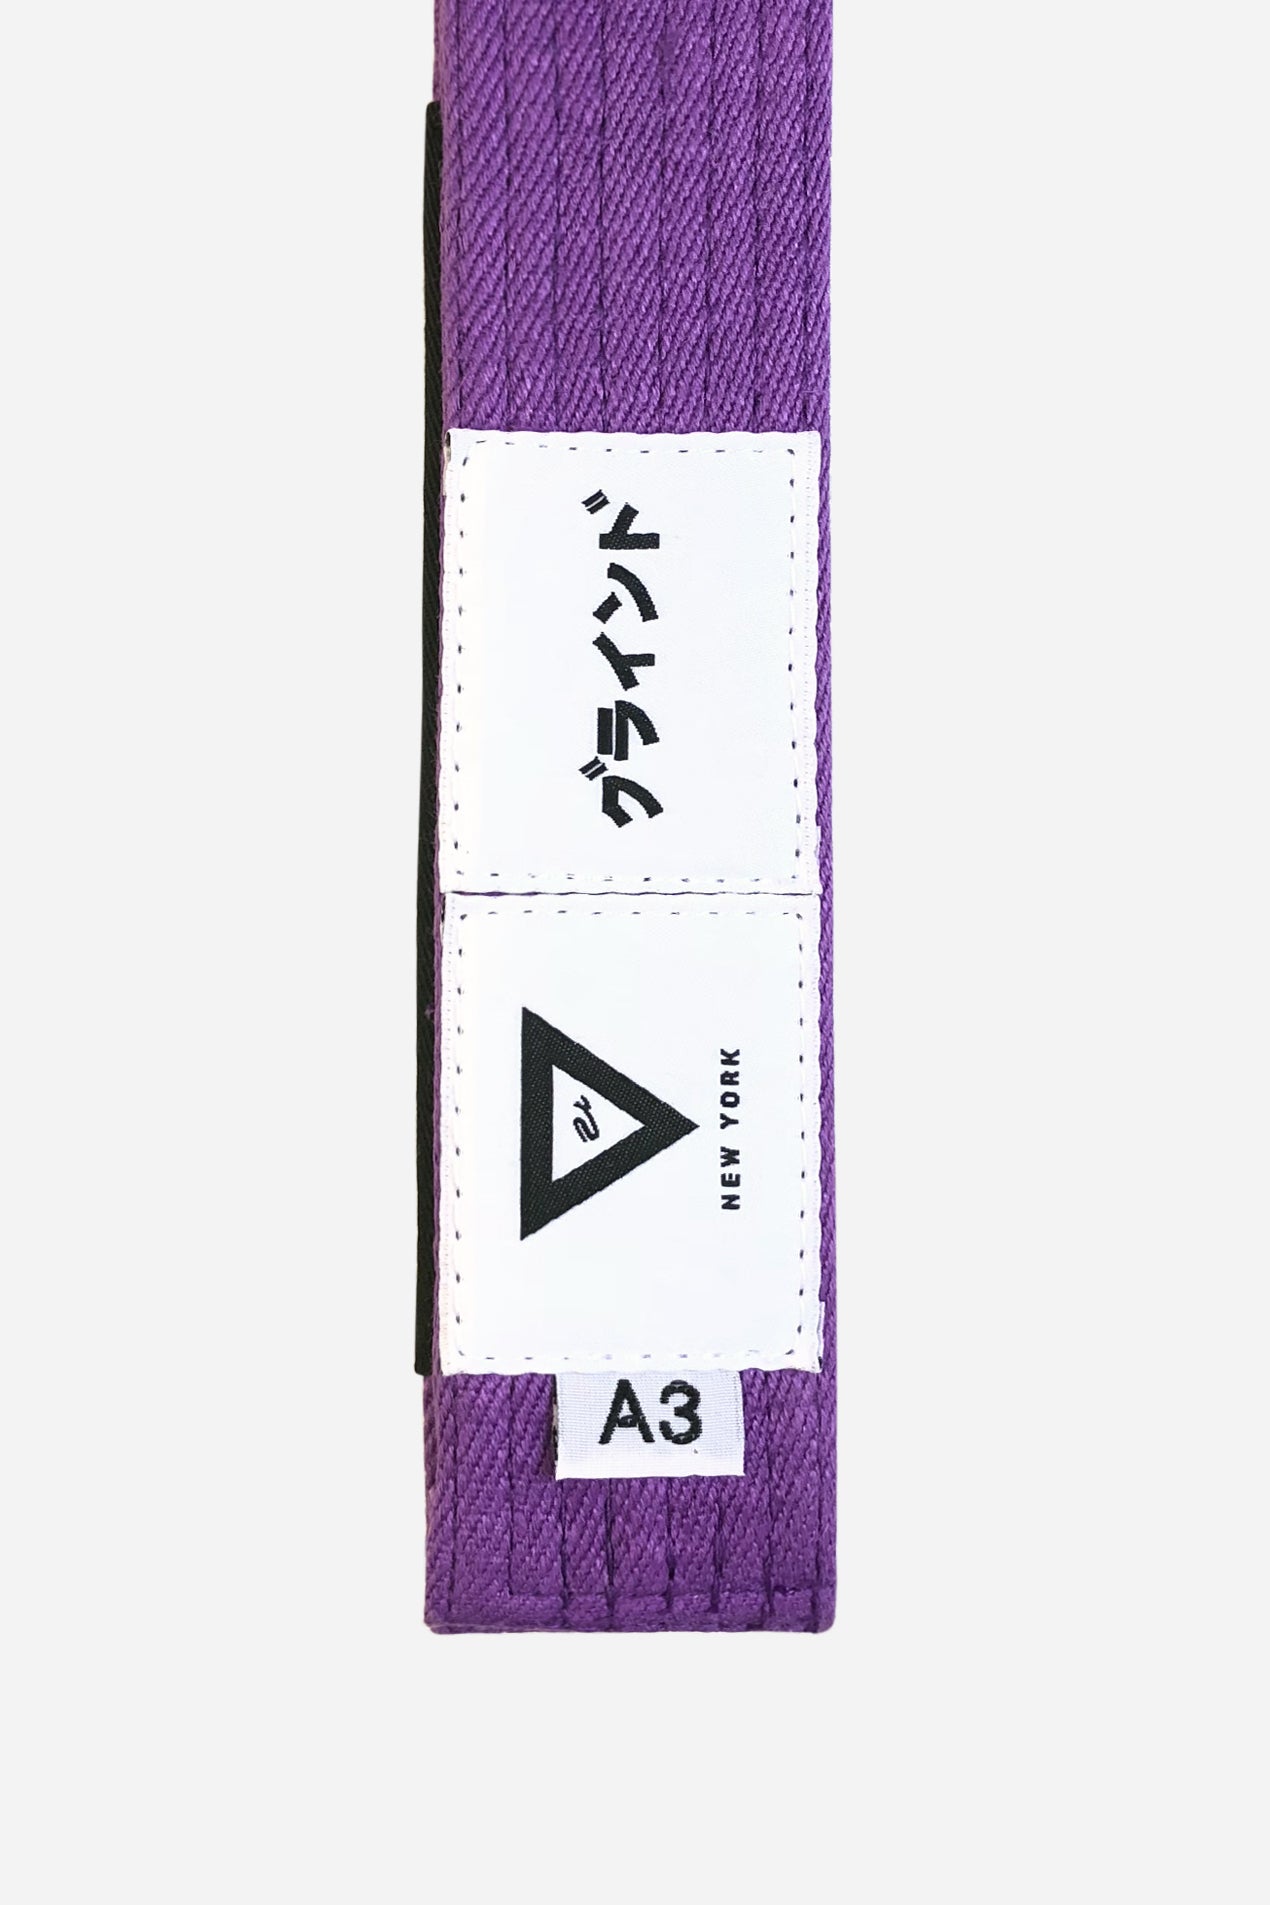 brazilian jiu jitsu purple HEMP BELT vhtseurope vhtsny 11OZ 100% Hemp Twill Fabric Two Layers Of High-density Cotton Supporting Inner Core Of The Belt 8 Rows Stitching Belt Width: 1-5/8" Belt Thickness: 1/4" Grading Bar Length: 5-1/4"